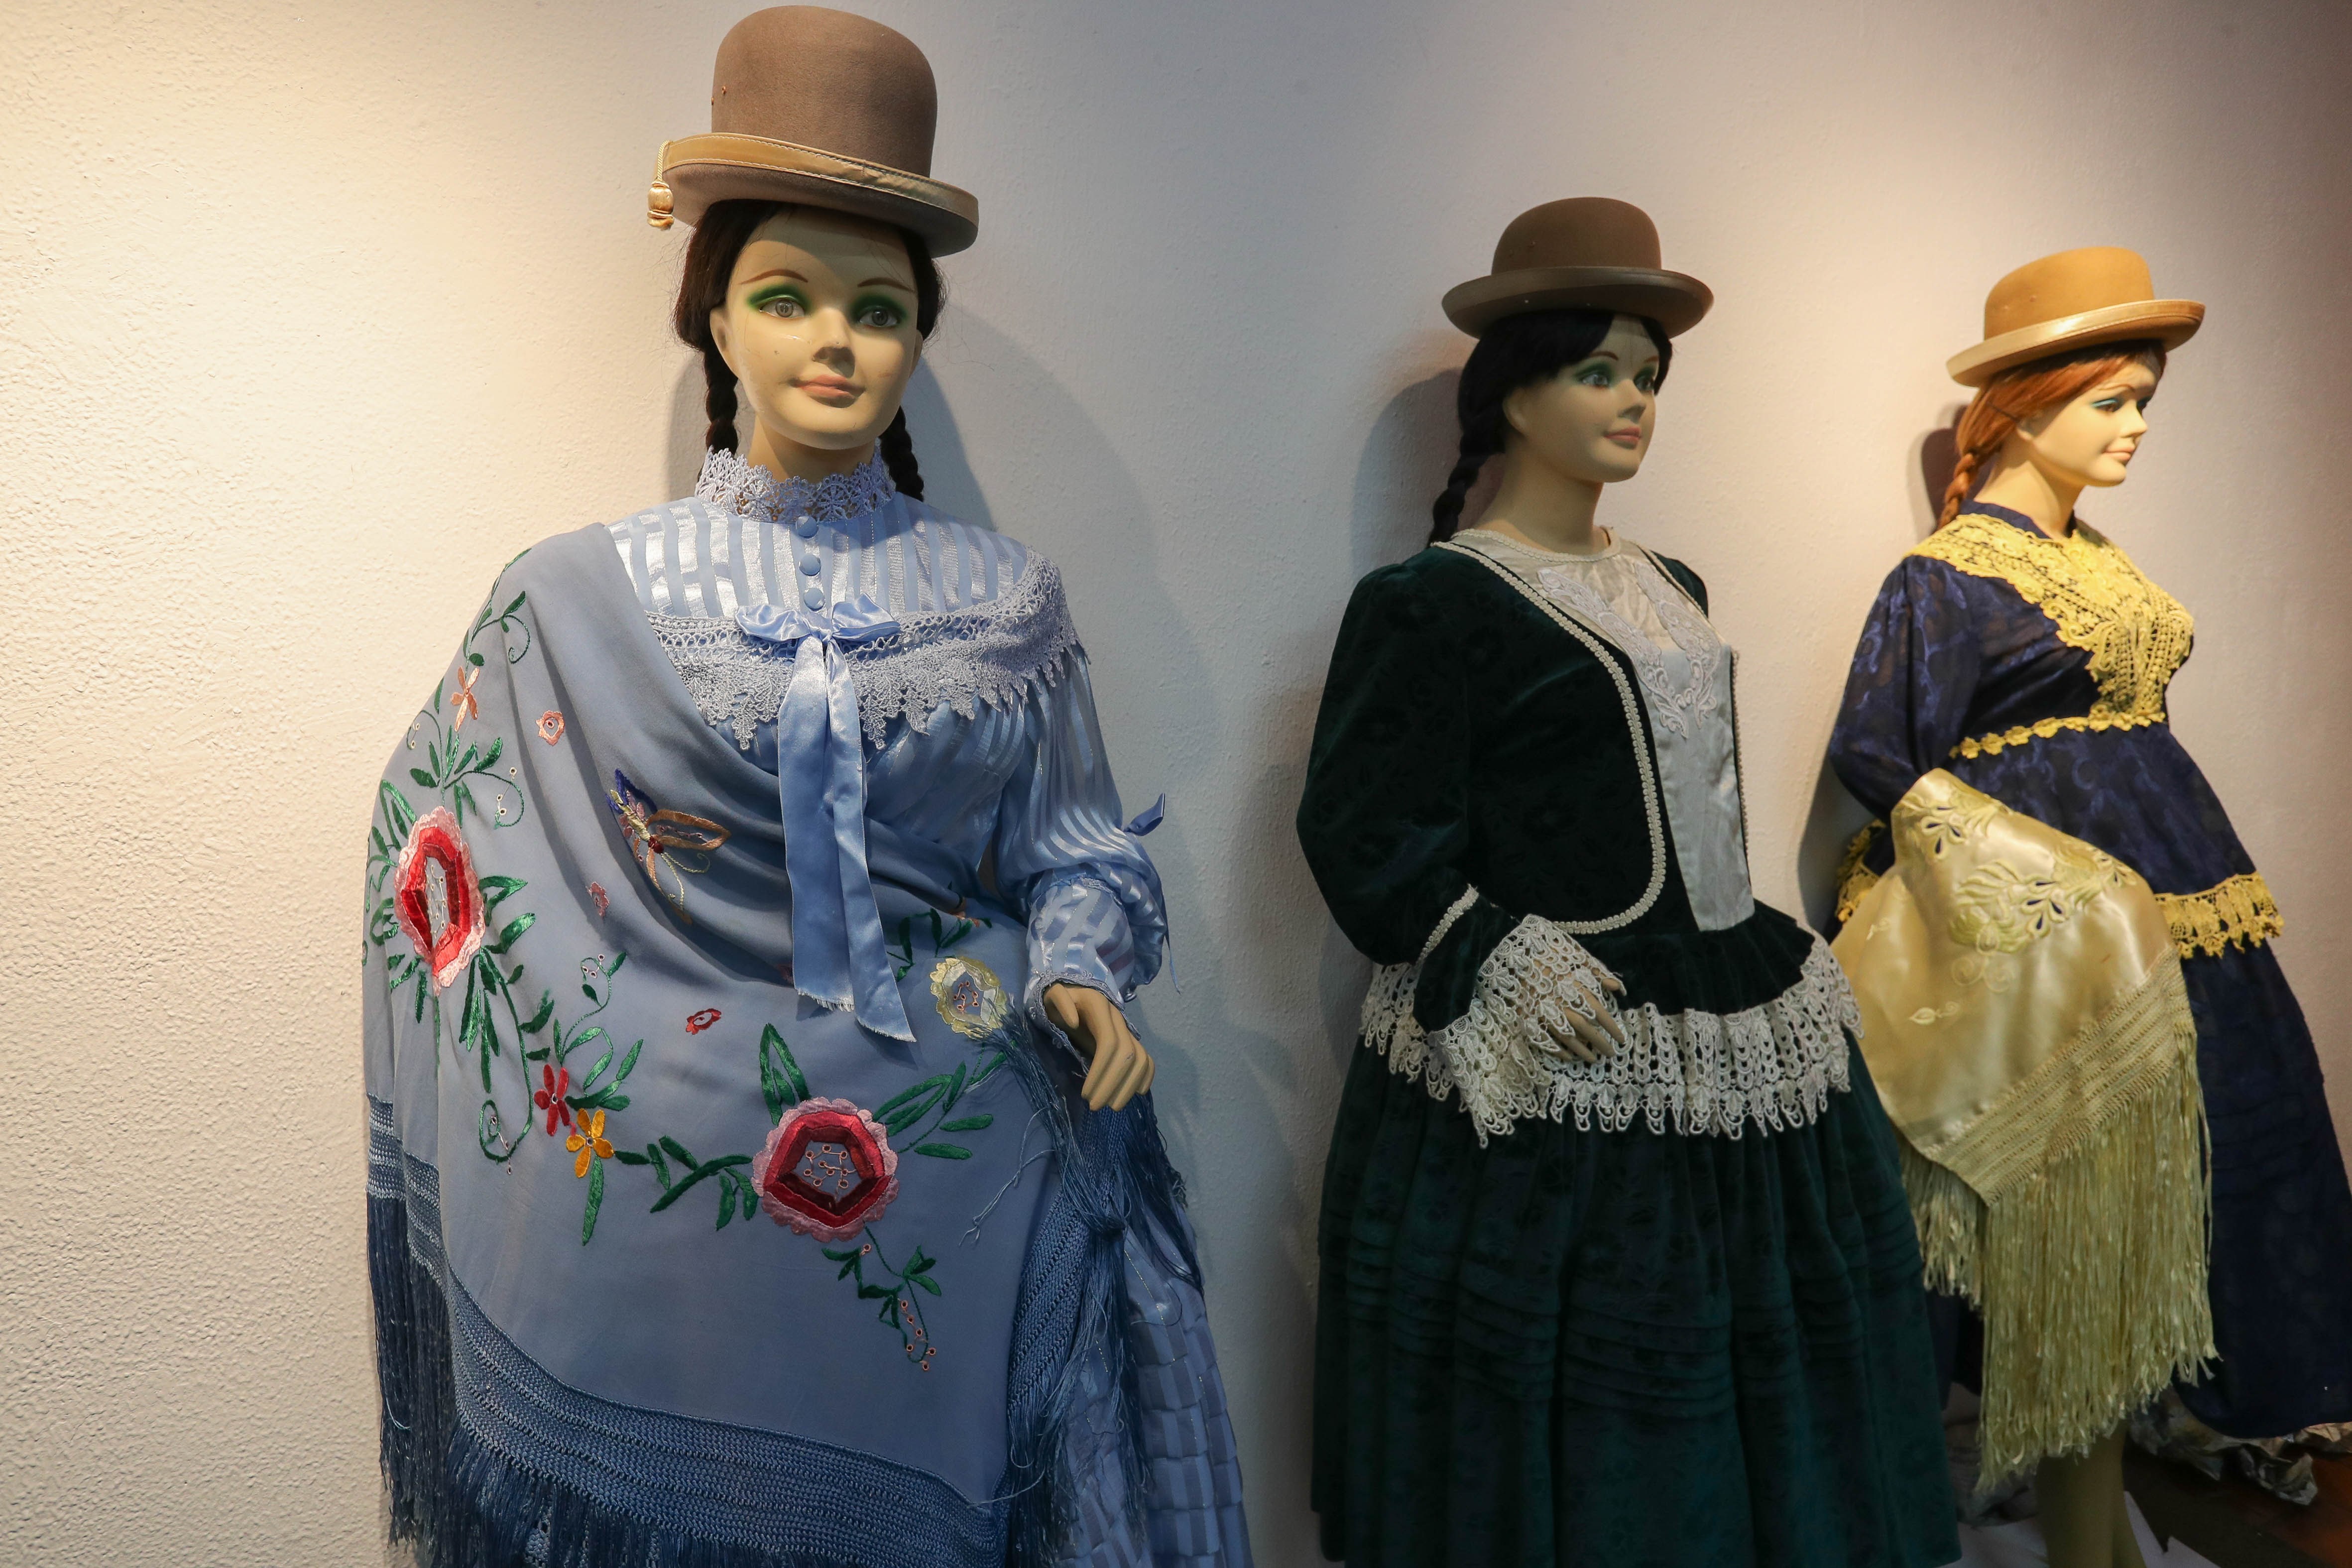 Las emblemáticas "cholitas" bolivianas, son parte de una exposición